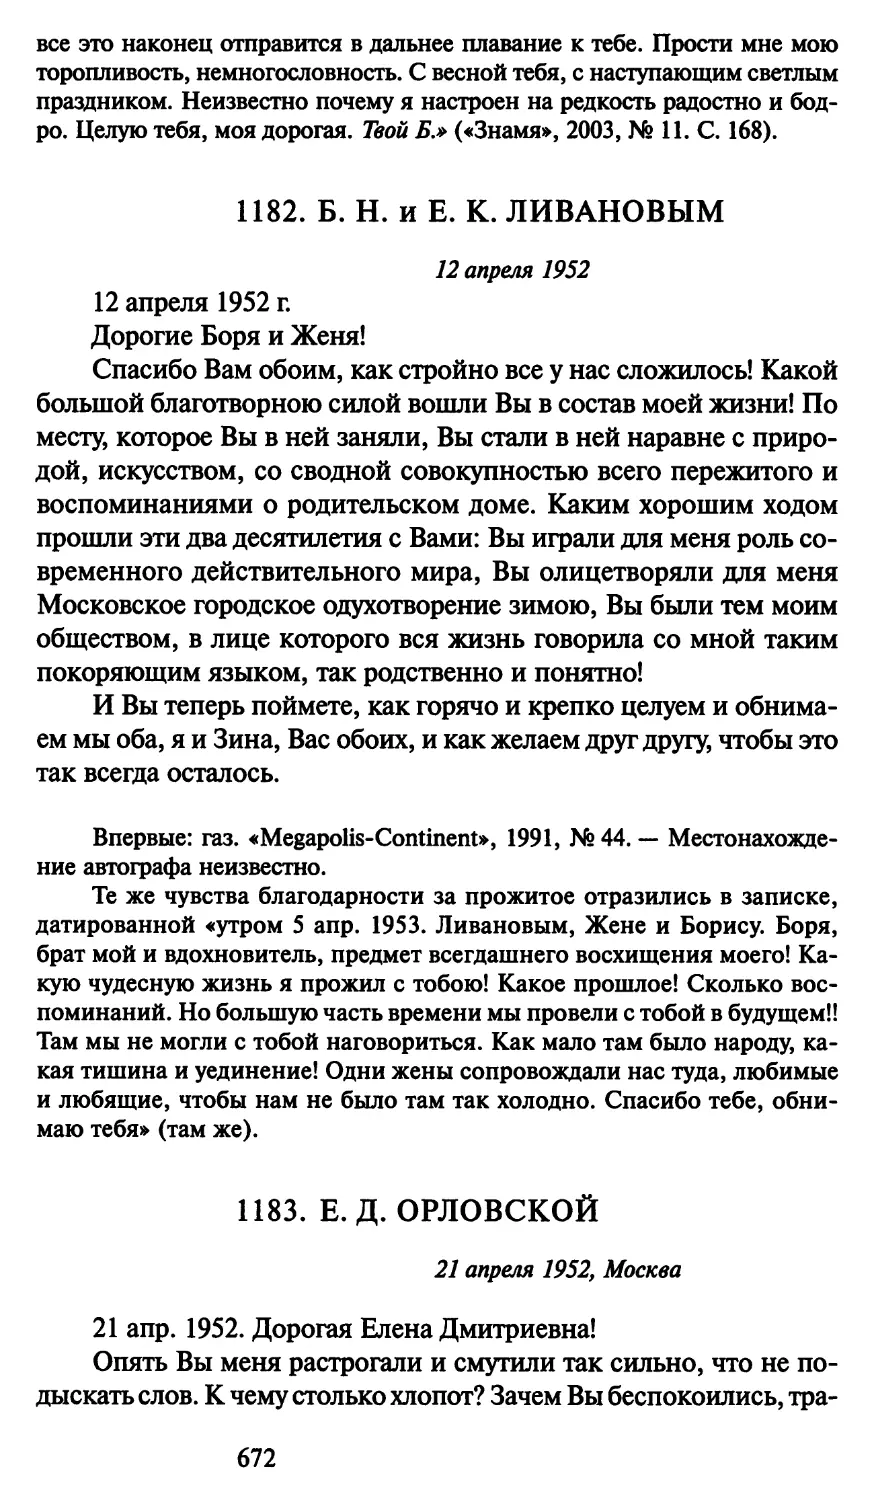 1183. Е. Д. Орловской 21 апреля 1952